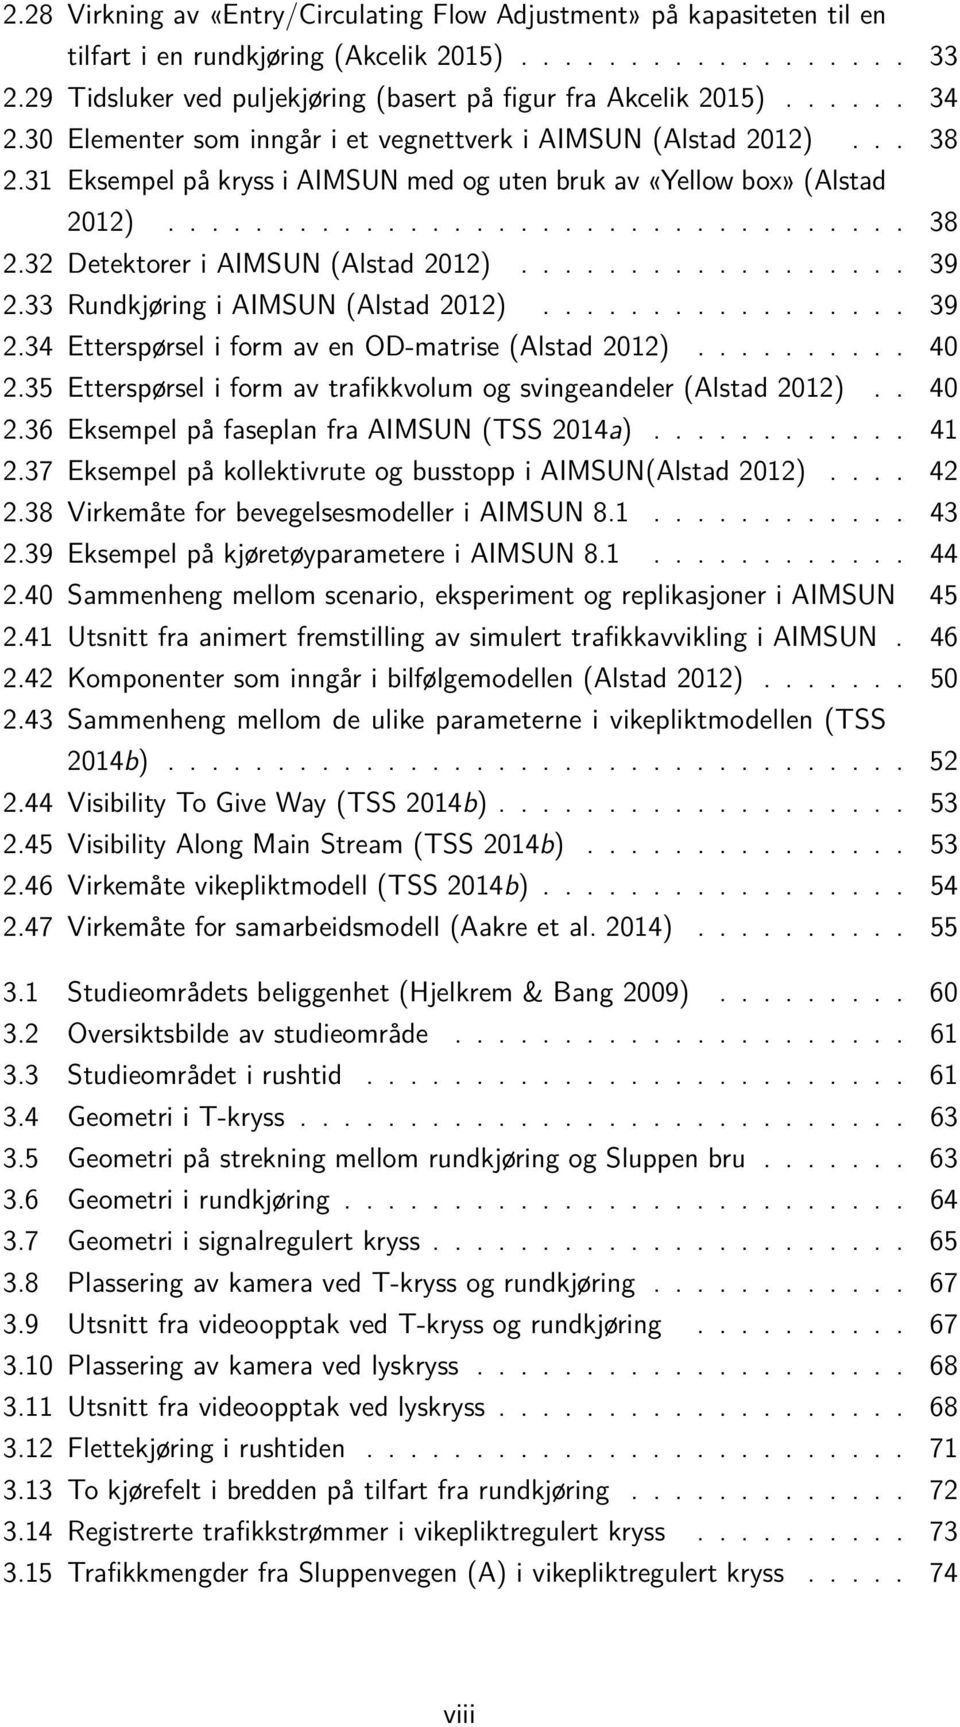 33 Rundkjøring i AIMSUN (Alstad 2012)... 39 2.34 Etterspørsel i form av en OD-matrise (Alstad 2012)... 40 2.35 Etterspørsel i form av trafikkvolum og svingeandeler (Alstad 2012).. 40 2.36 Eksempel på faseplan fra AIMSUN (TSS 2014a).